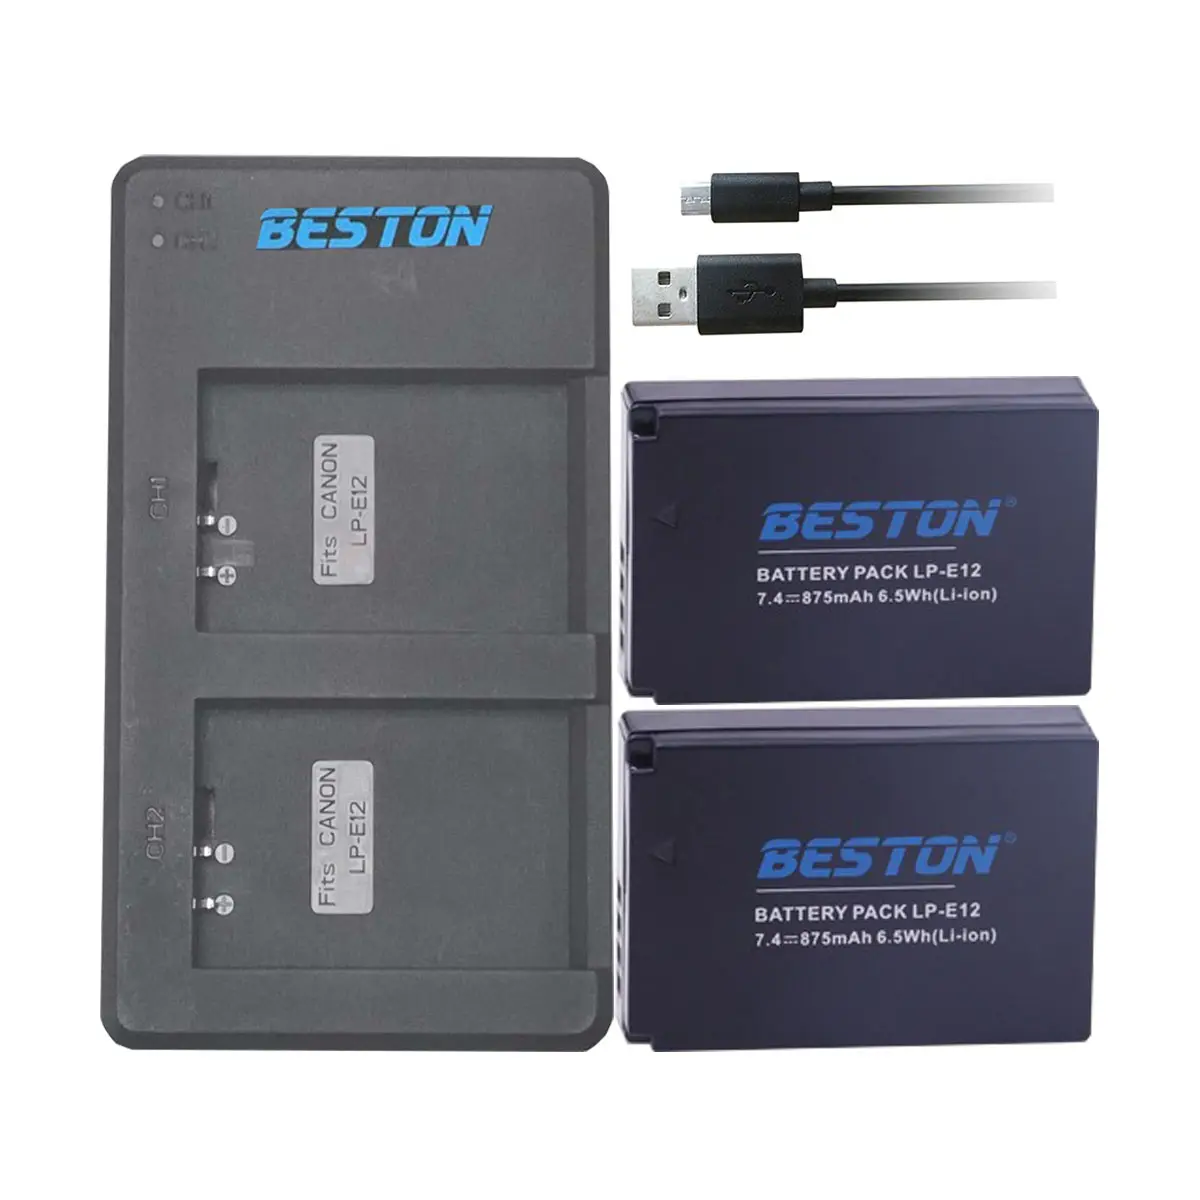 Beston 2 Pack LP-E12 Ricaricabile al litio battery pack e Dual USB Caricatore portatile per Canon EOS M100, rebel SL1, EOS 100D